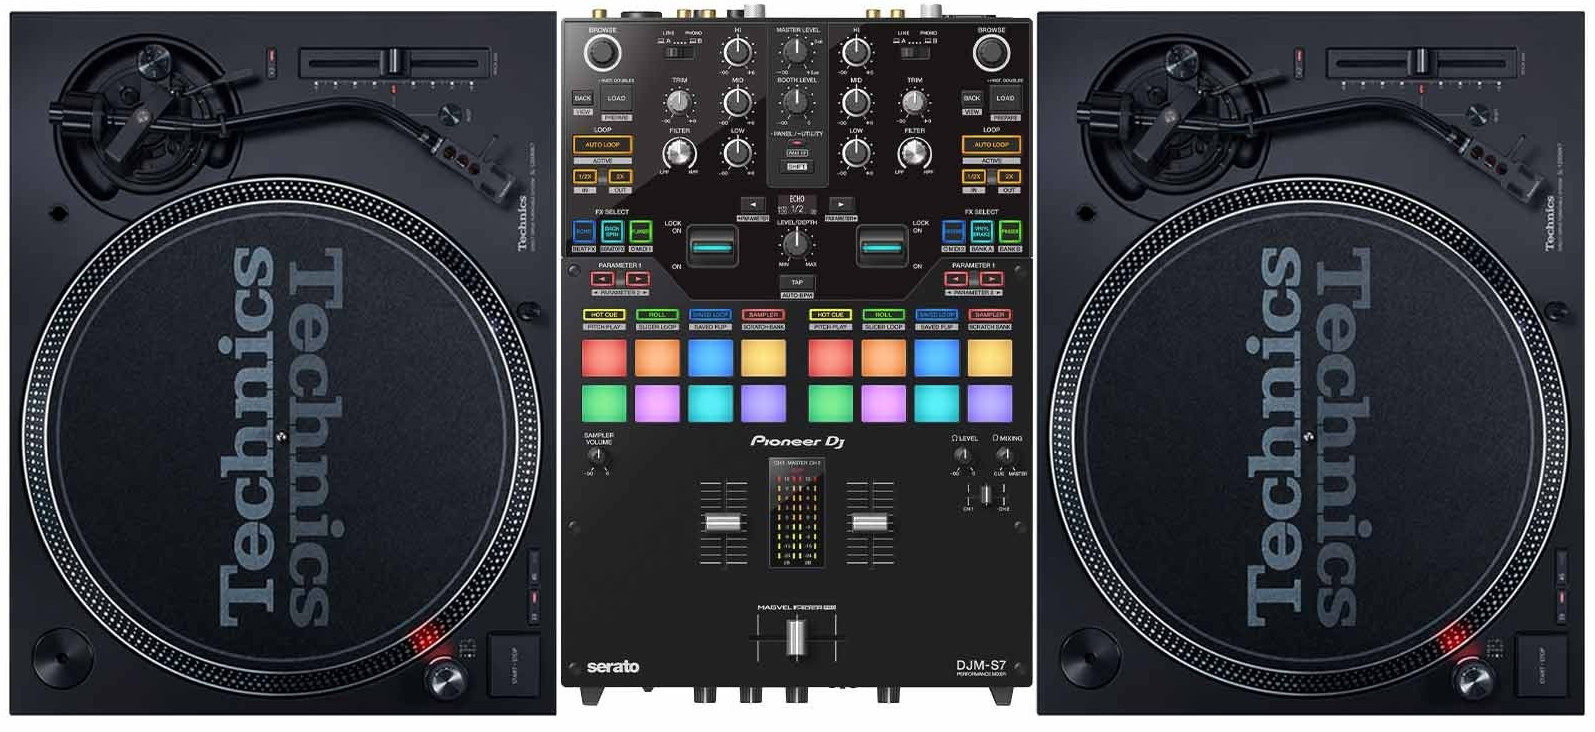 Technics SL-1200MK7 DJ Turntables w/ Mixer